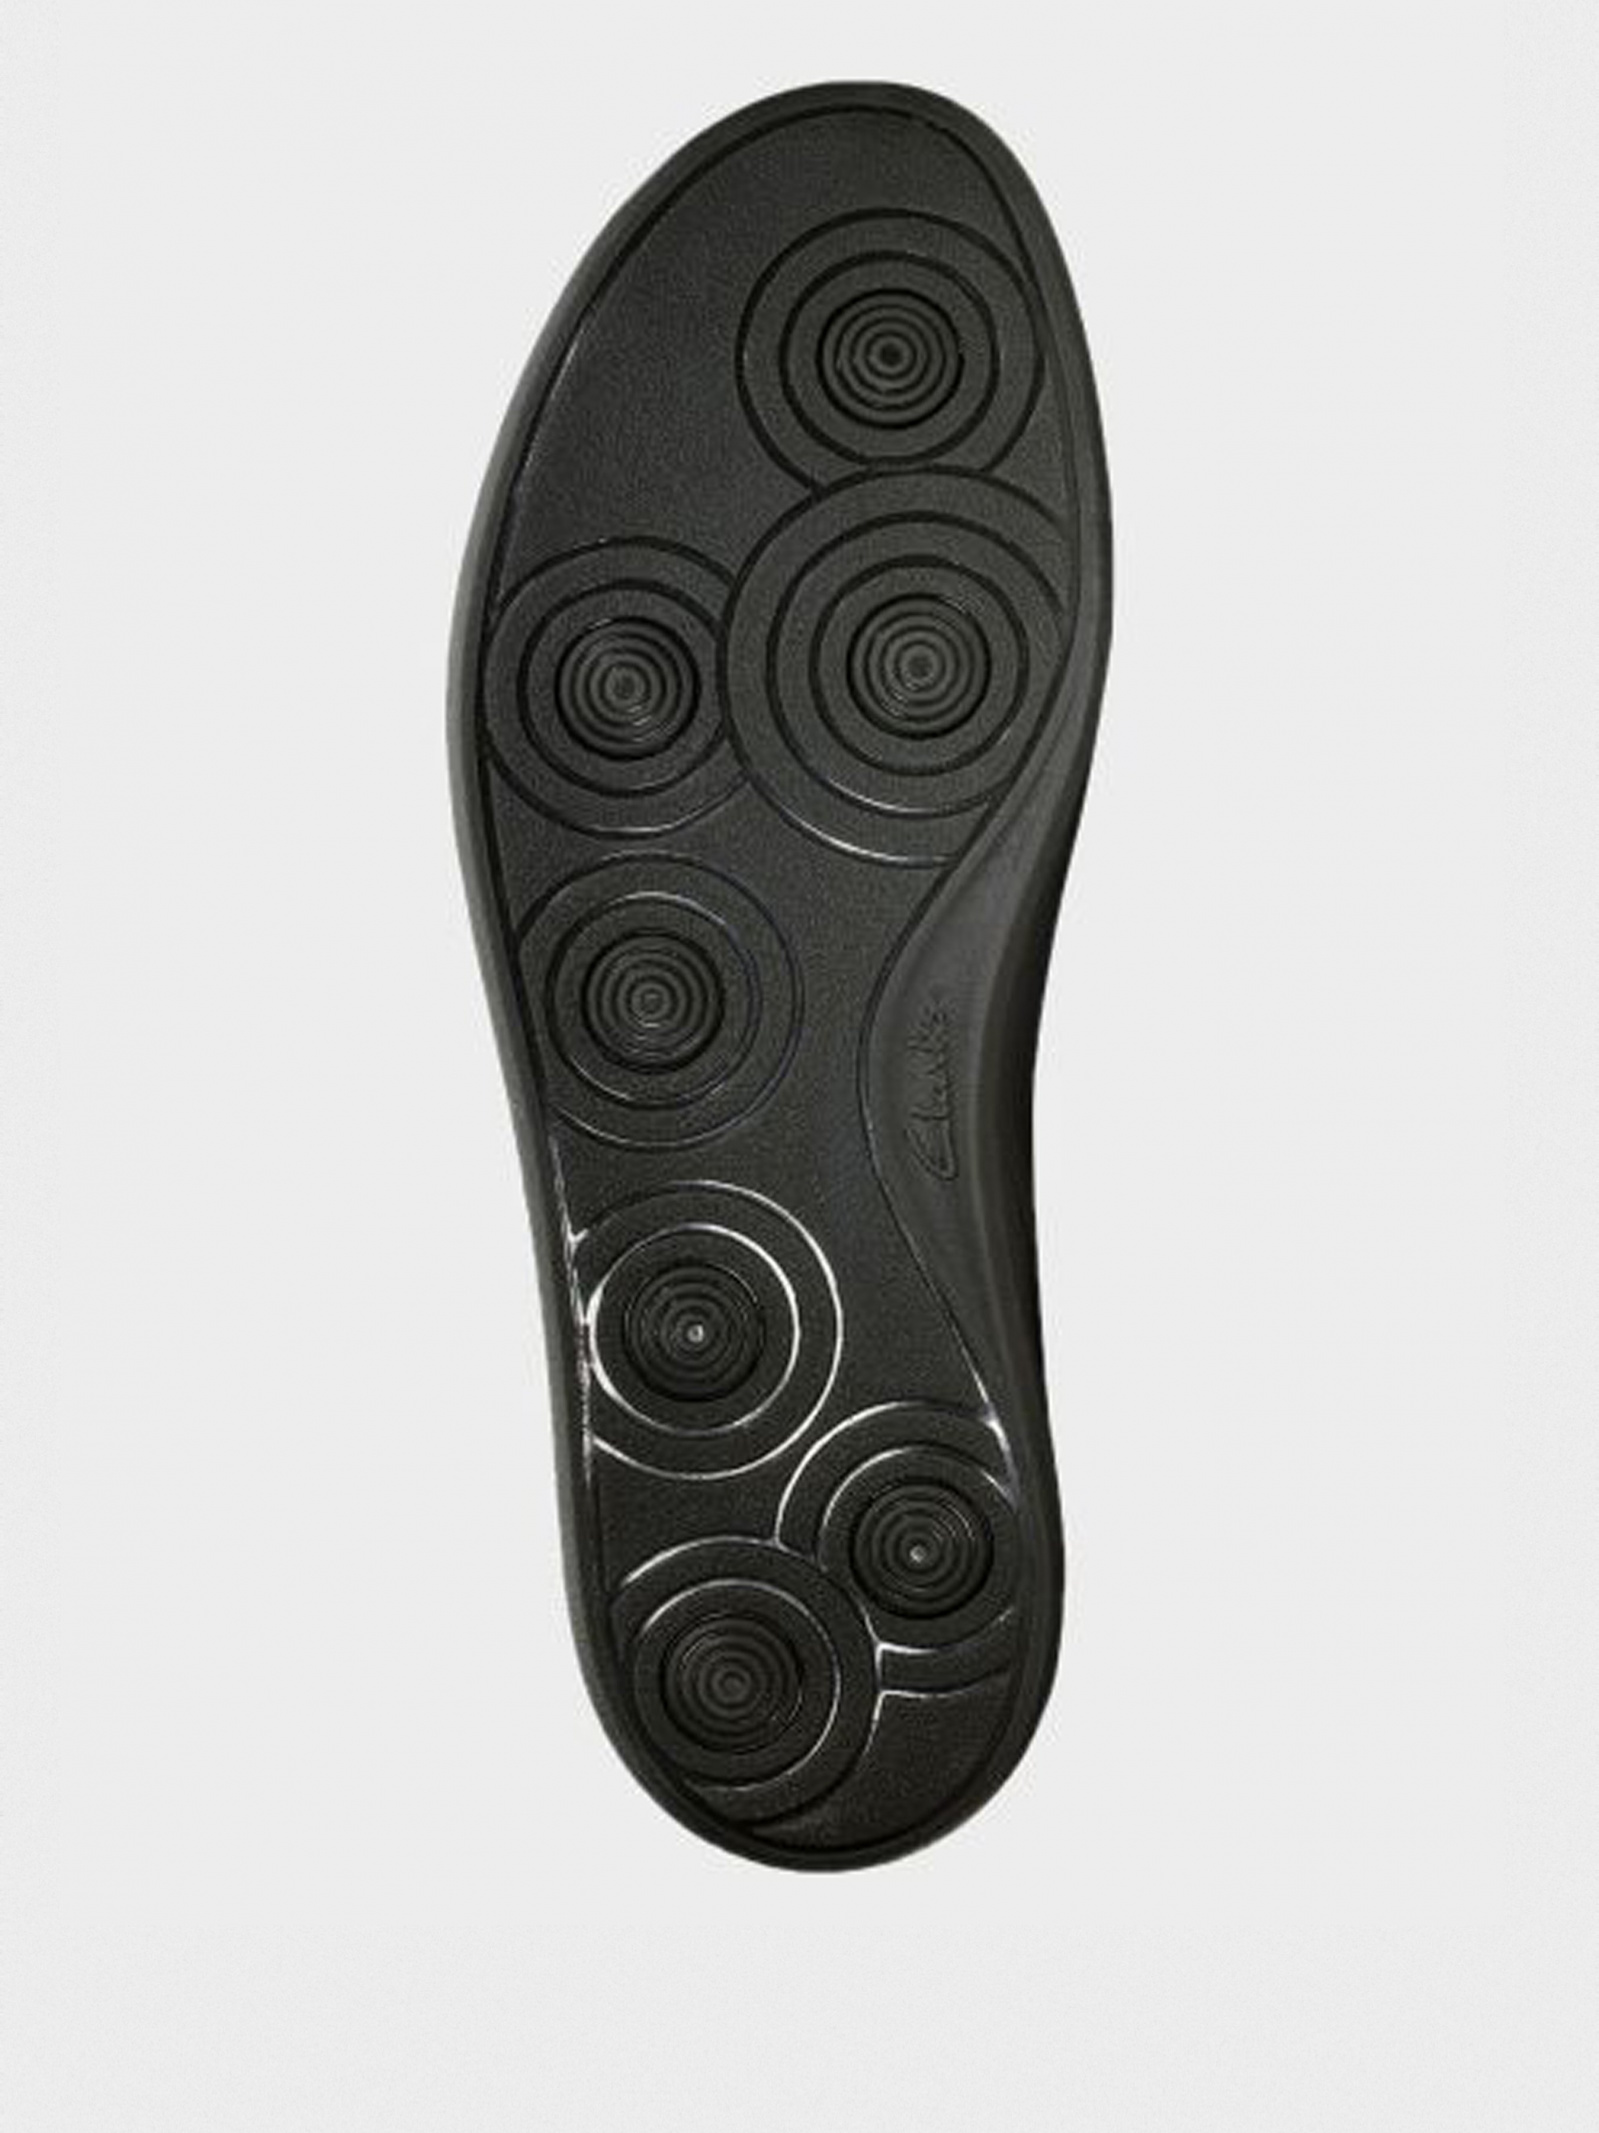 Ботинки Clarks Oakland Rise 2614-4068 для мужчин Чёрный - купить в Киеве, в магазине Intertop: цена, фото, отзывы